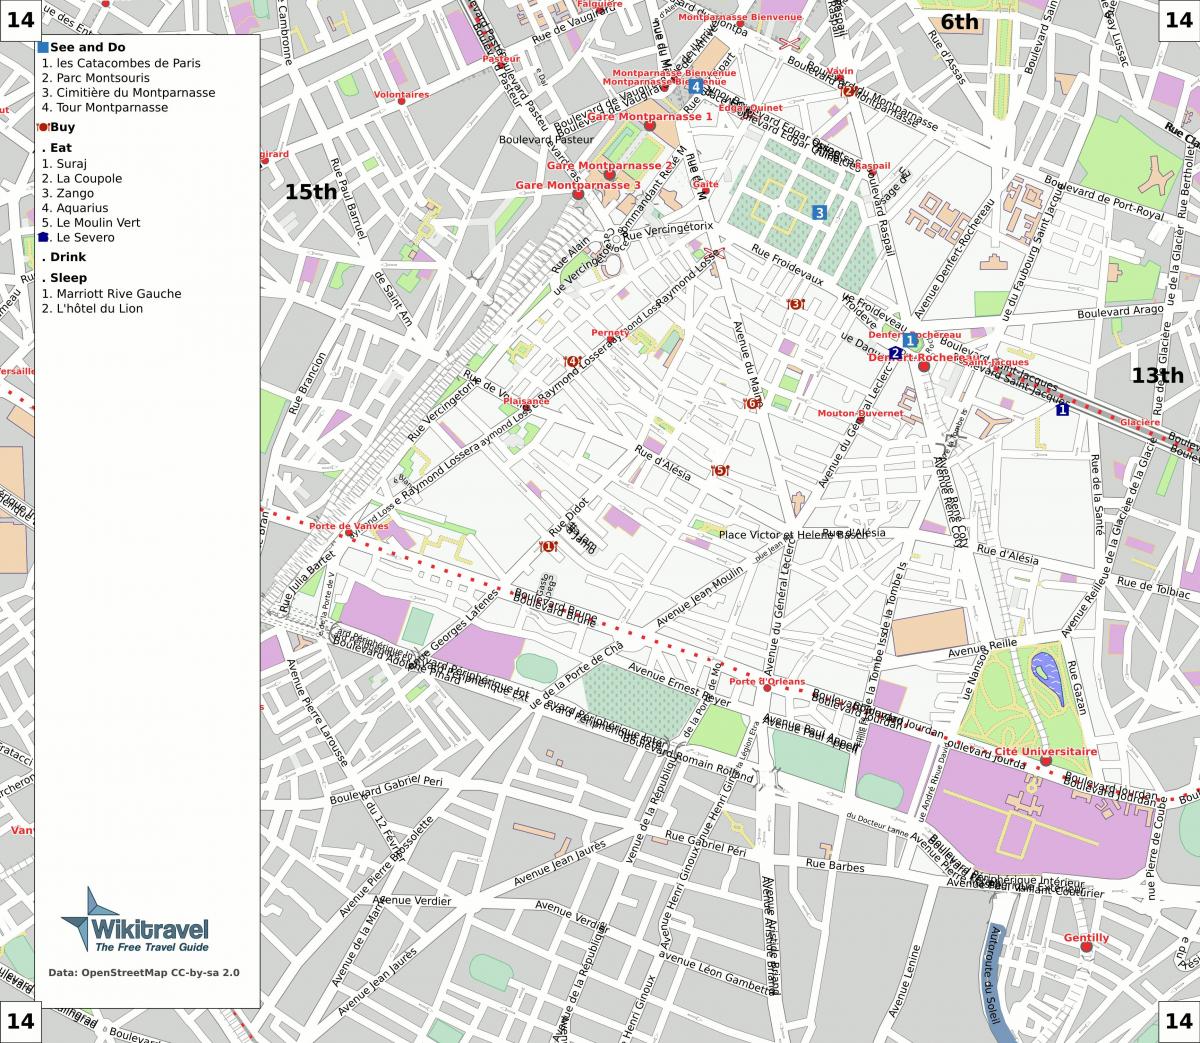 Kort over 14 arrondissement i Paris